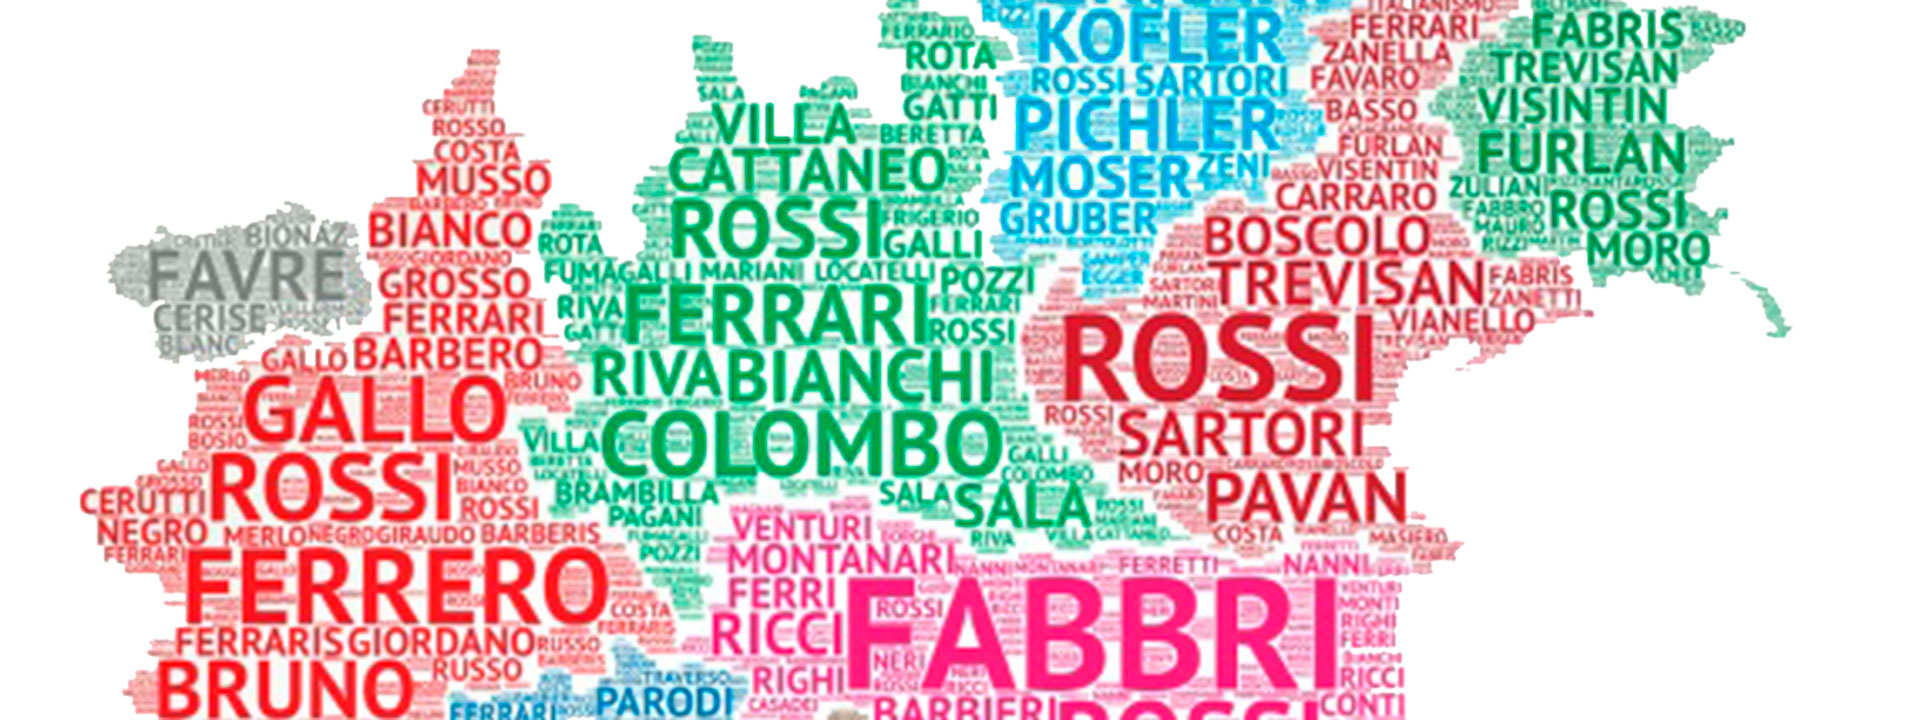 Algunos de los apellidos más comunes en Italia son Rossi, Russo, Ferrari, Esposito y Bianchi.